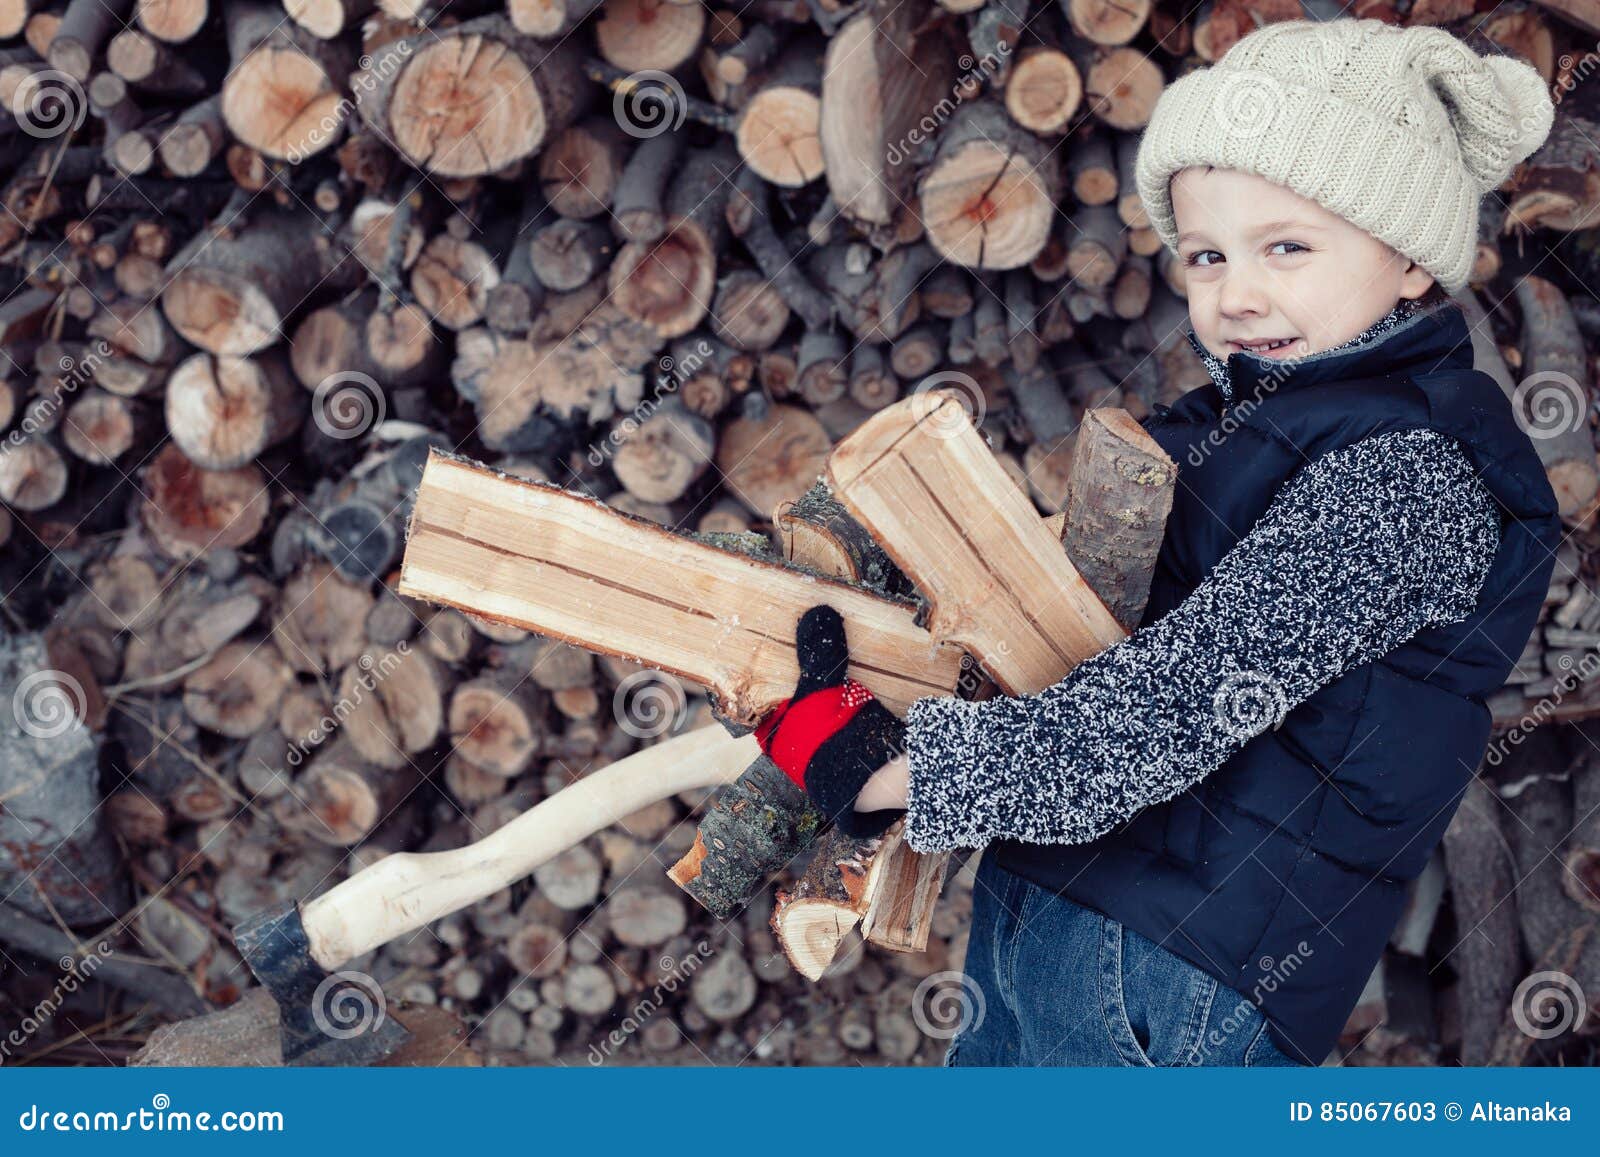 Мальчика рубят. Мальчик с дровами. Детская фотосессия с дровами. Дрова для детей. Фотосессия мальчик с дровами зимой.